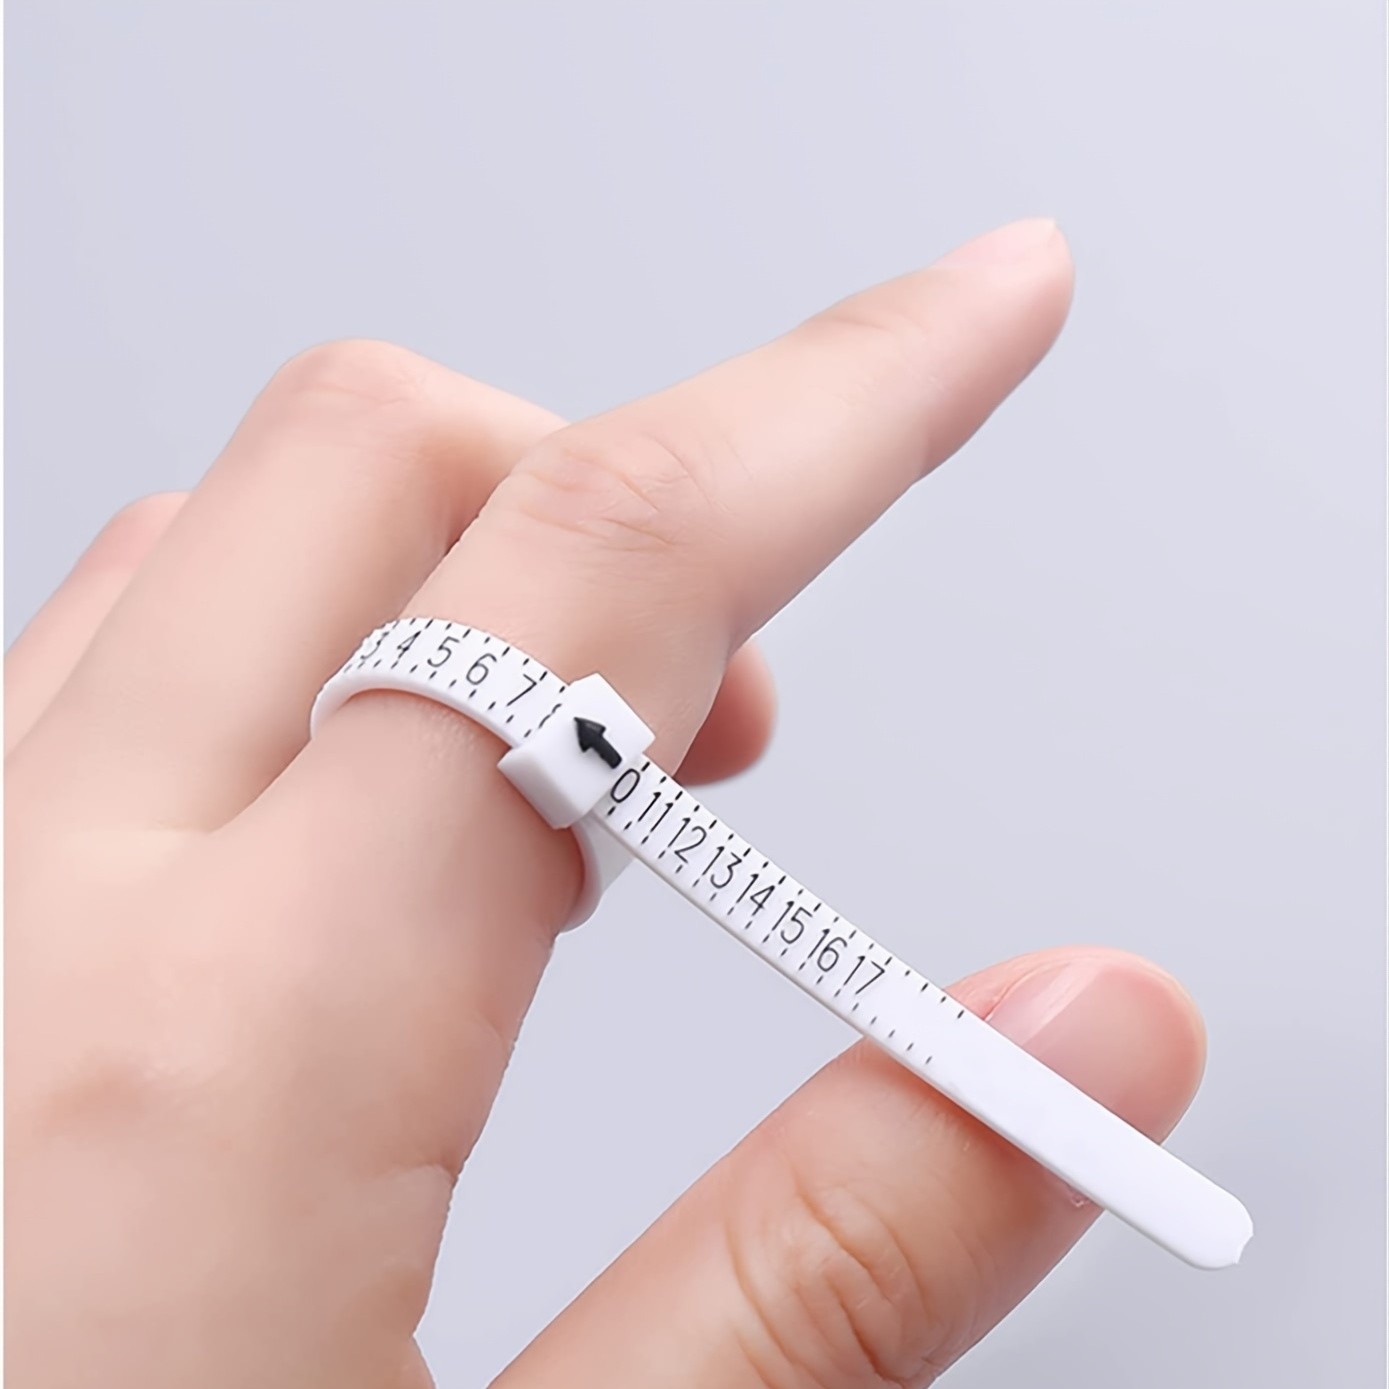  Herramienta de medición de tamaño de anillo mejorada, medidor  de tamaño de anillo reutilizable para dedos, herramienta de tamaño de  joyería, medidor de anillos de 1 a 17 de EE. UU. (